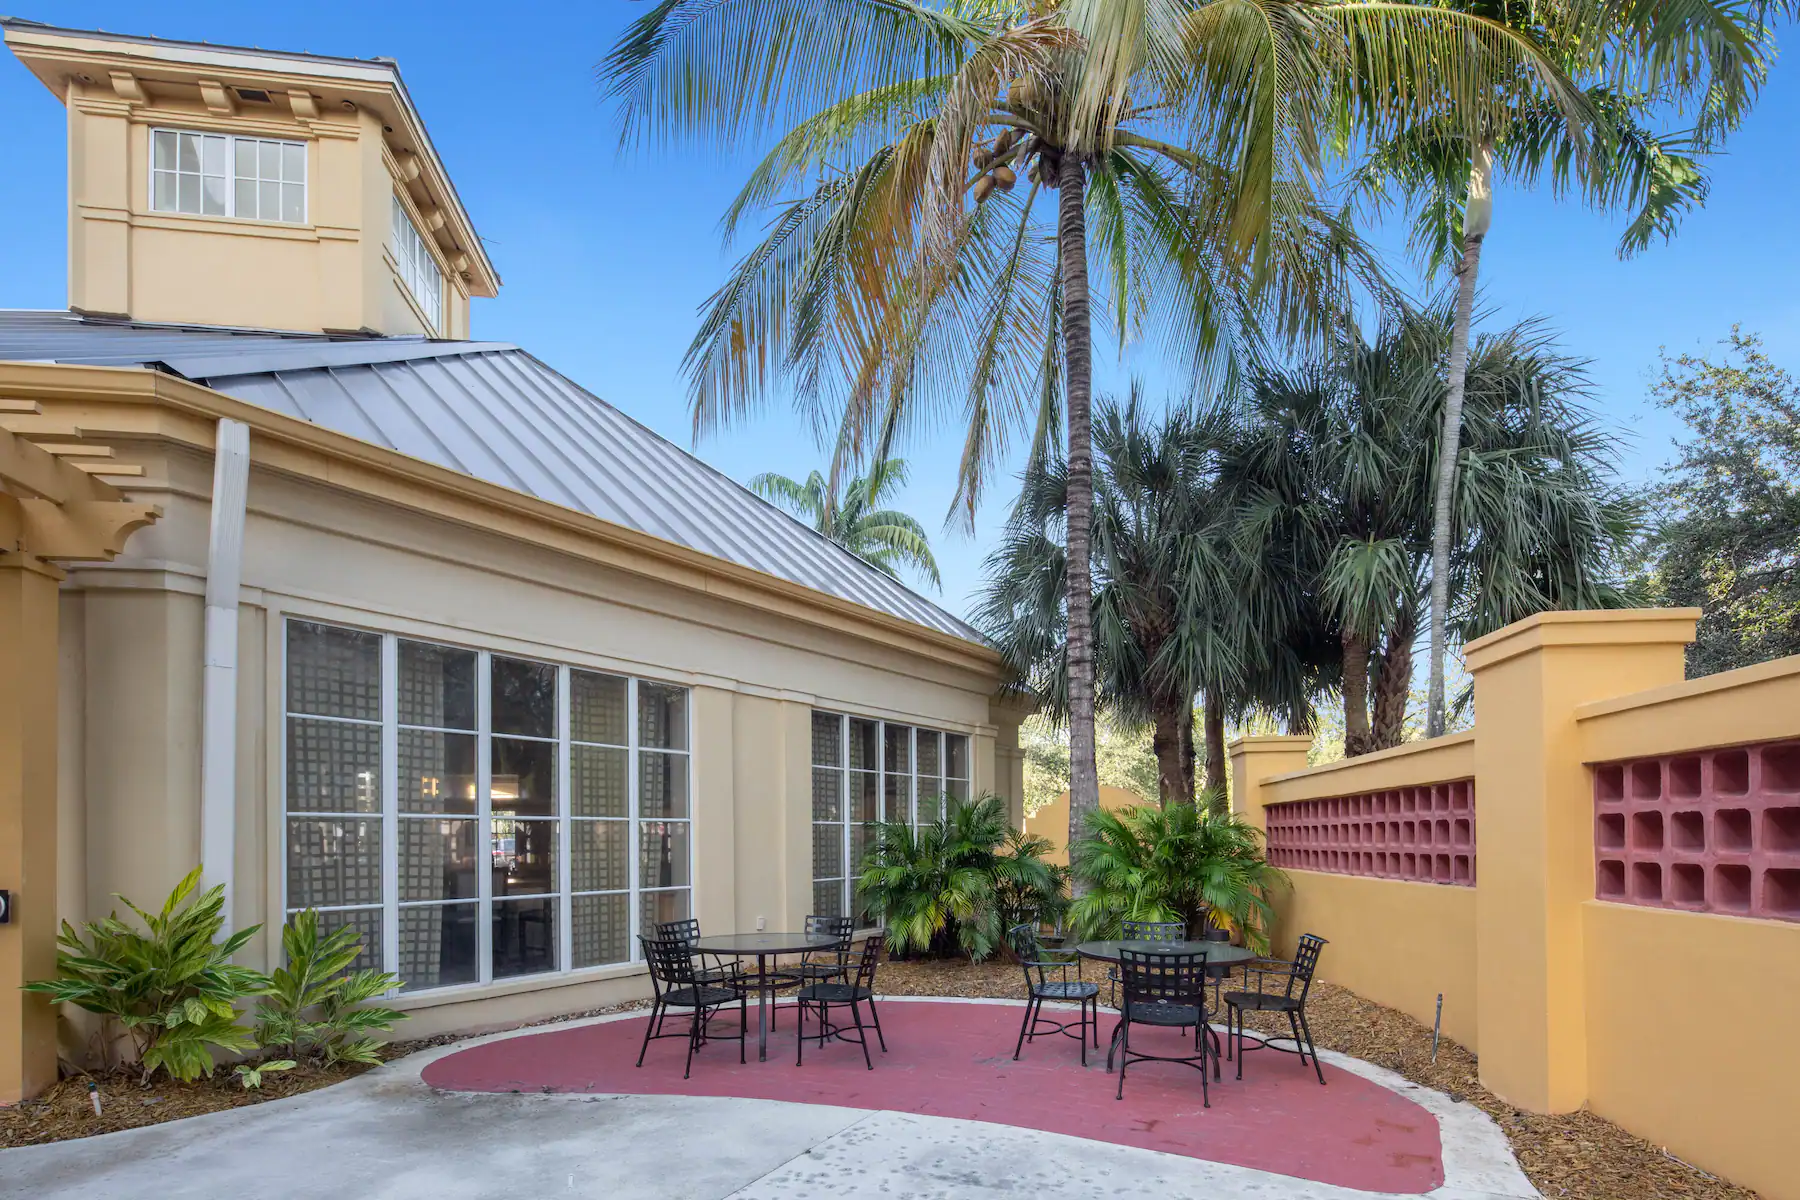 La Quinta Inn & Suites Miami Airpot